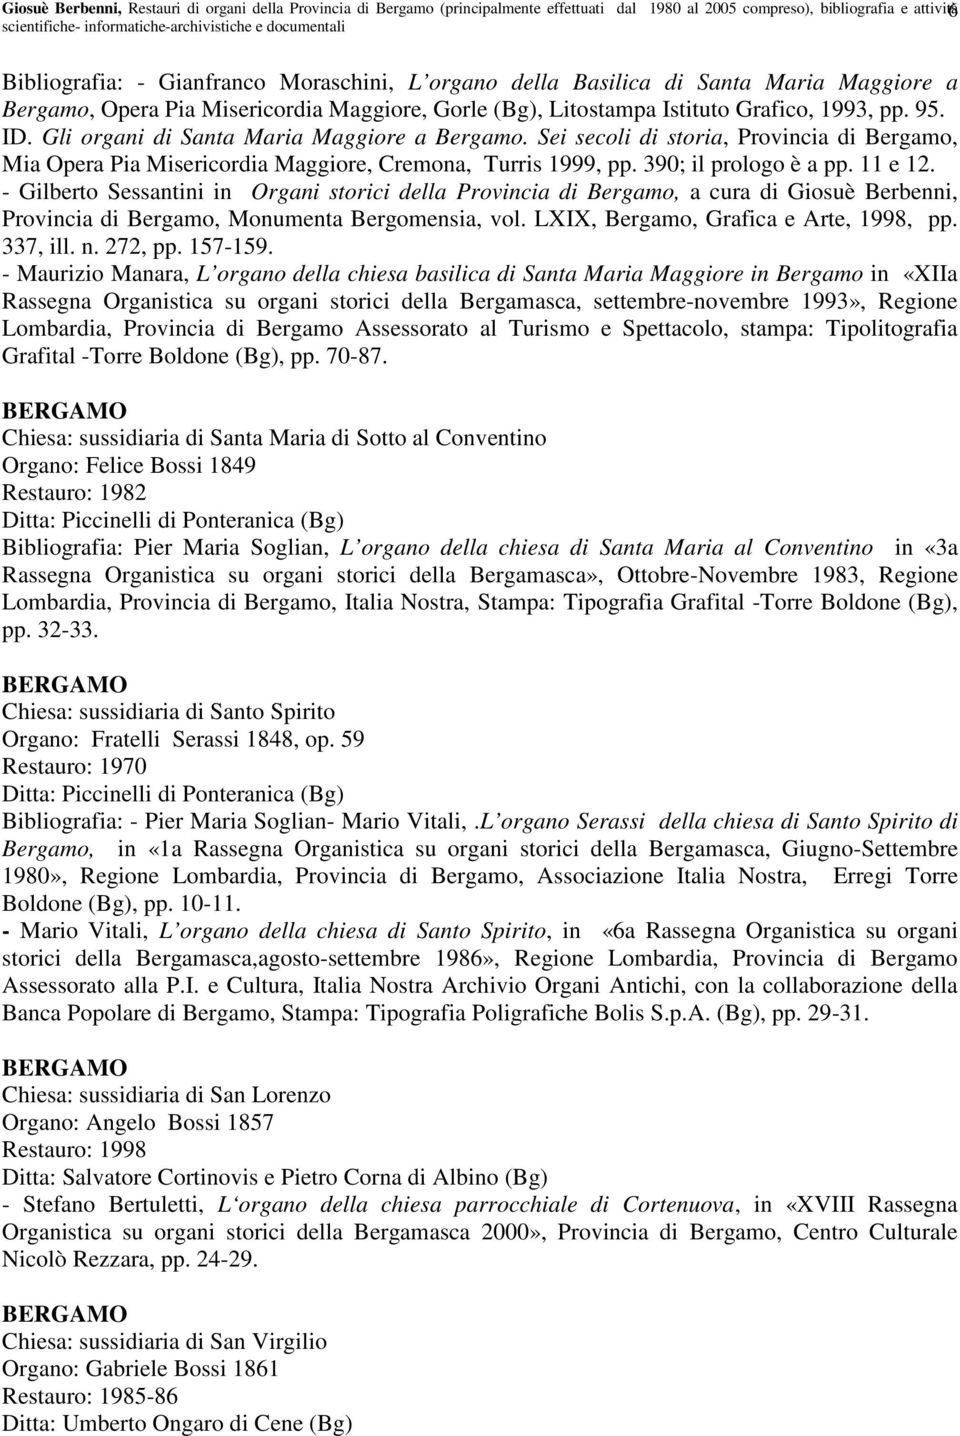 Sei secoli di storia, Provincia di Bergamo, Mia Opera Pia Misericordia Maggiore, Cremona, Turris 1999, pp. 390; il prologo è a pp. 11 e 12.